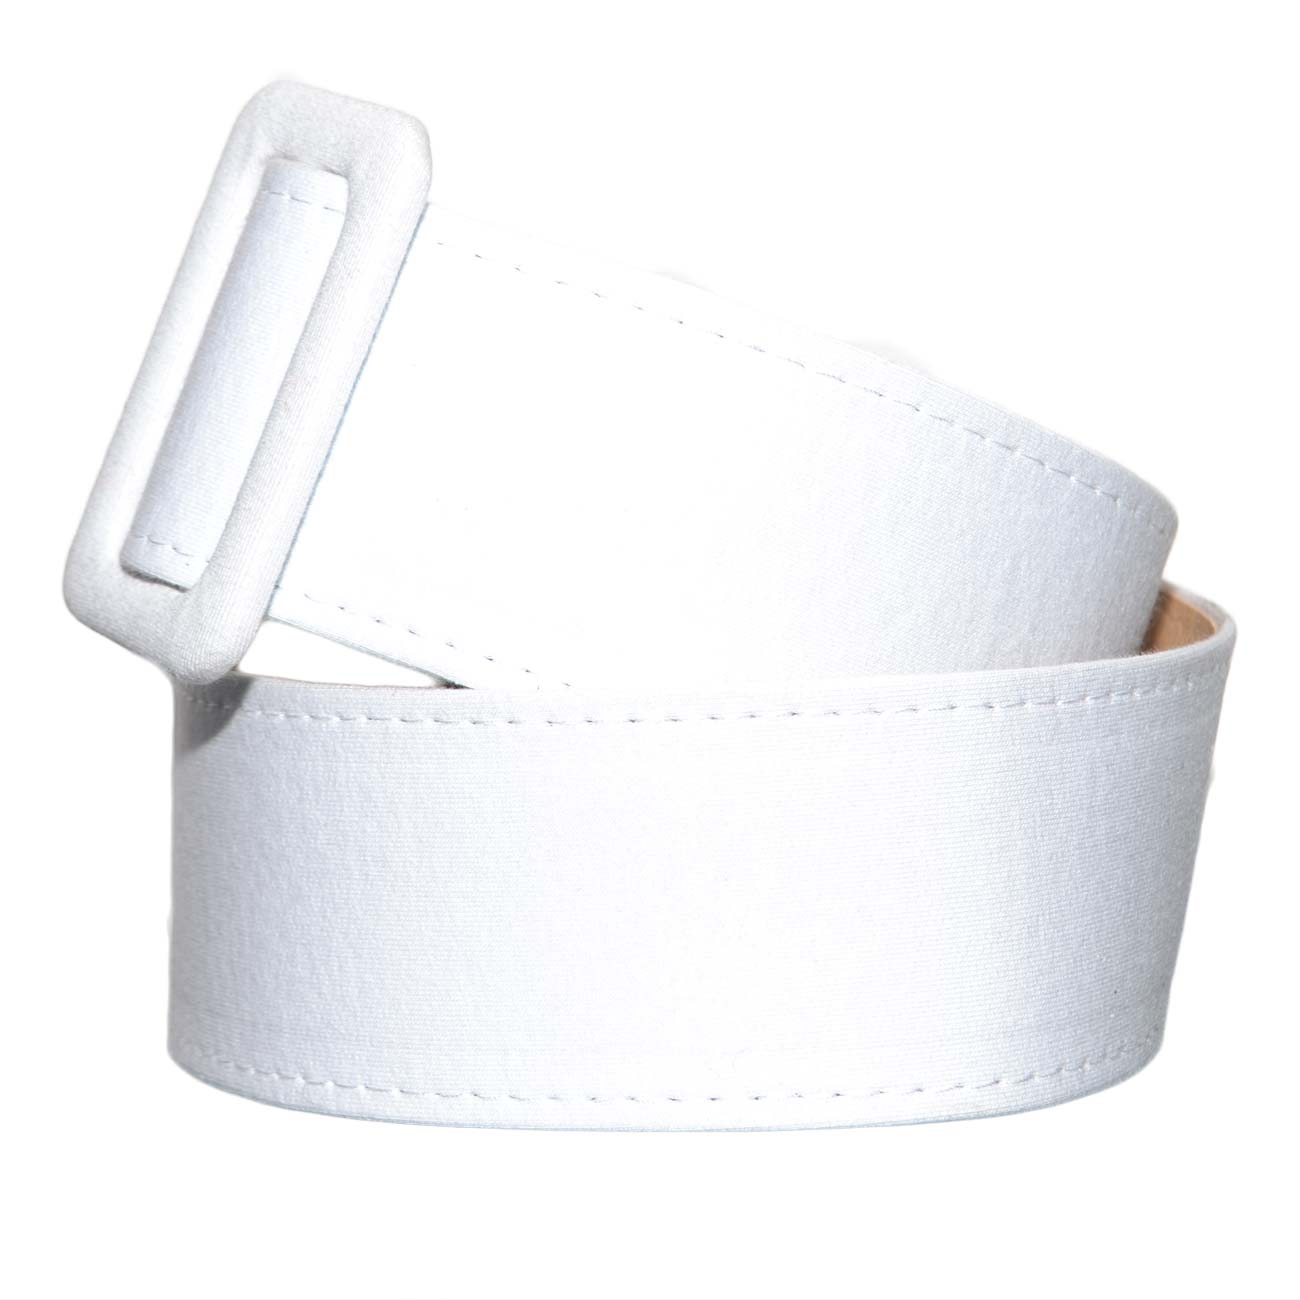 Cintura donna in cotone telato bianca con fibbia quadrata da poter mettere in vita o sui fianchi regolabile elegante